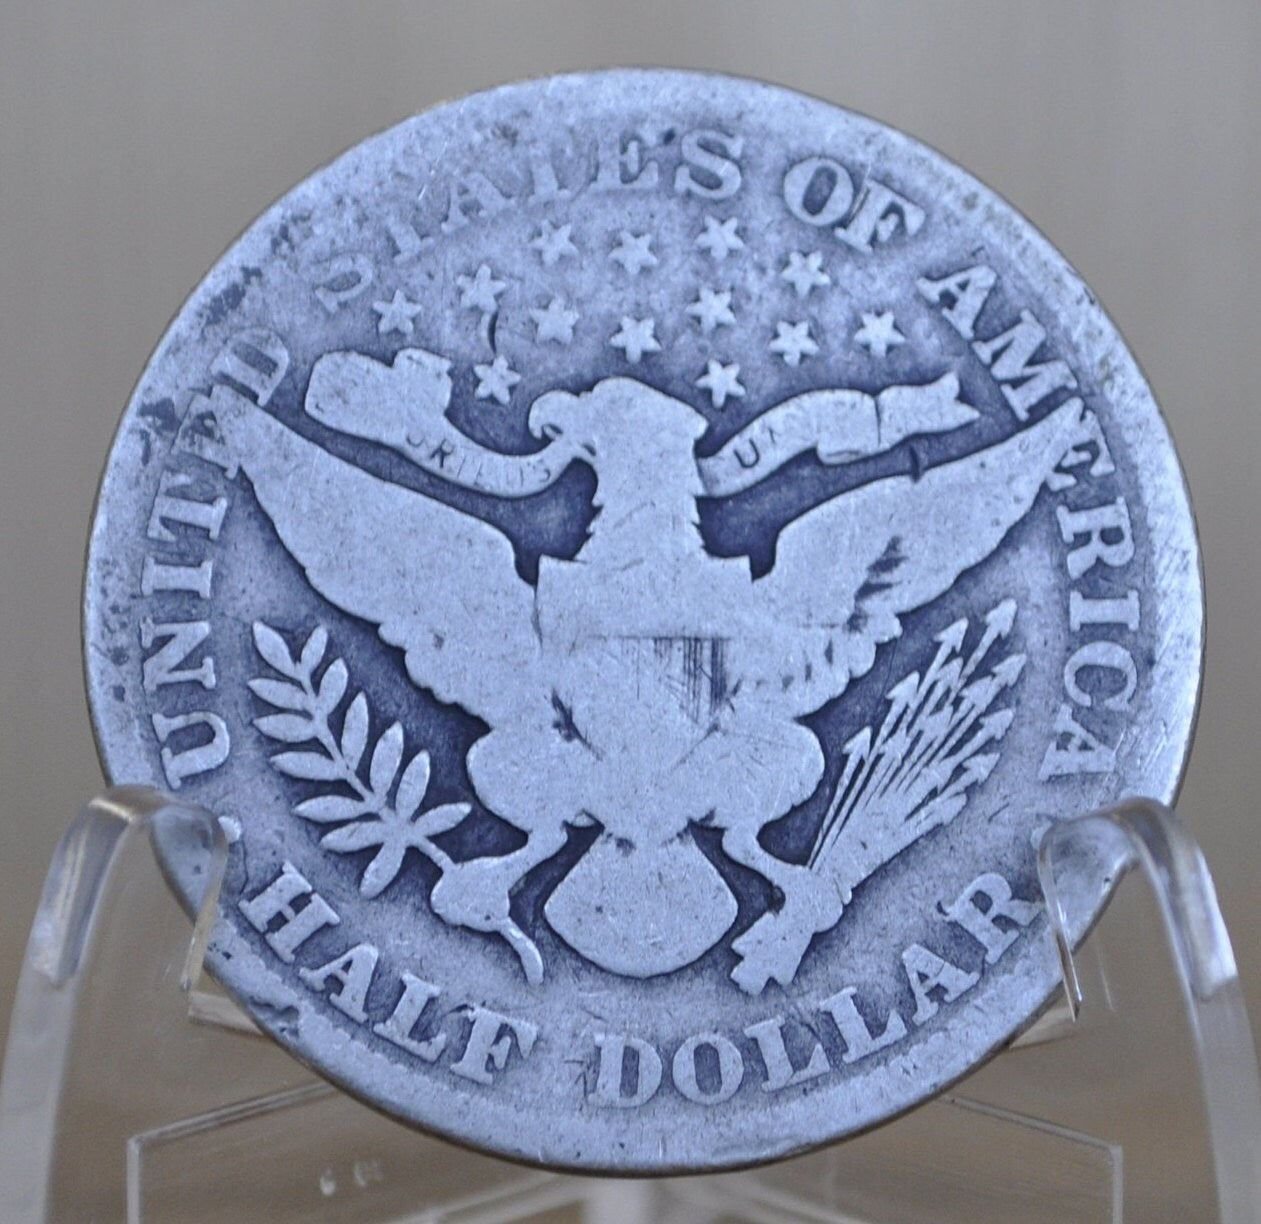 1903 Barber Silver Half Dollar - G (Good) Grade - Philadelphia Mint - 1903 P Silver Half Dollar - 1903 Barber - 1903 P Half Dollar